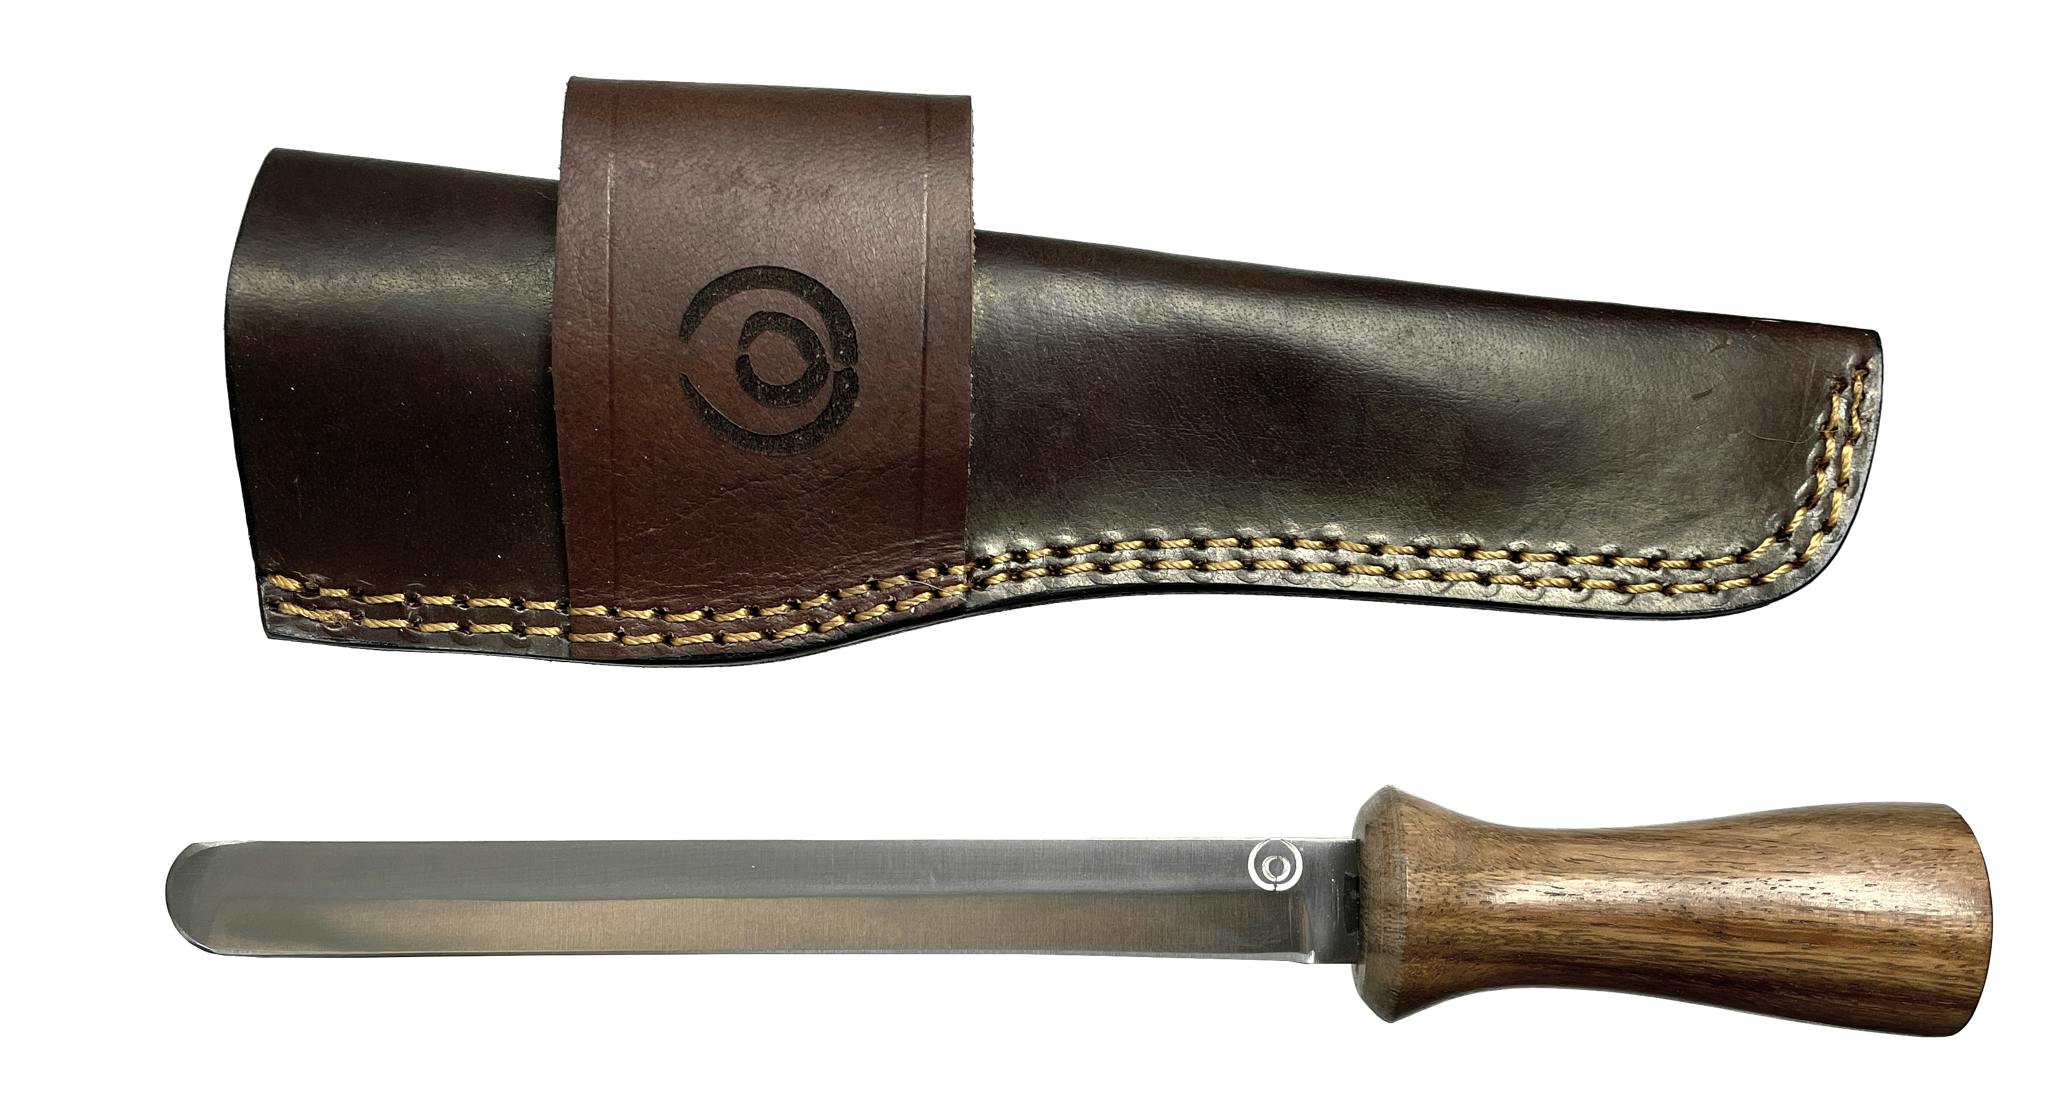 Handgjord kniv som används för att sota vilt